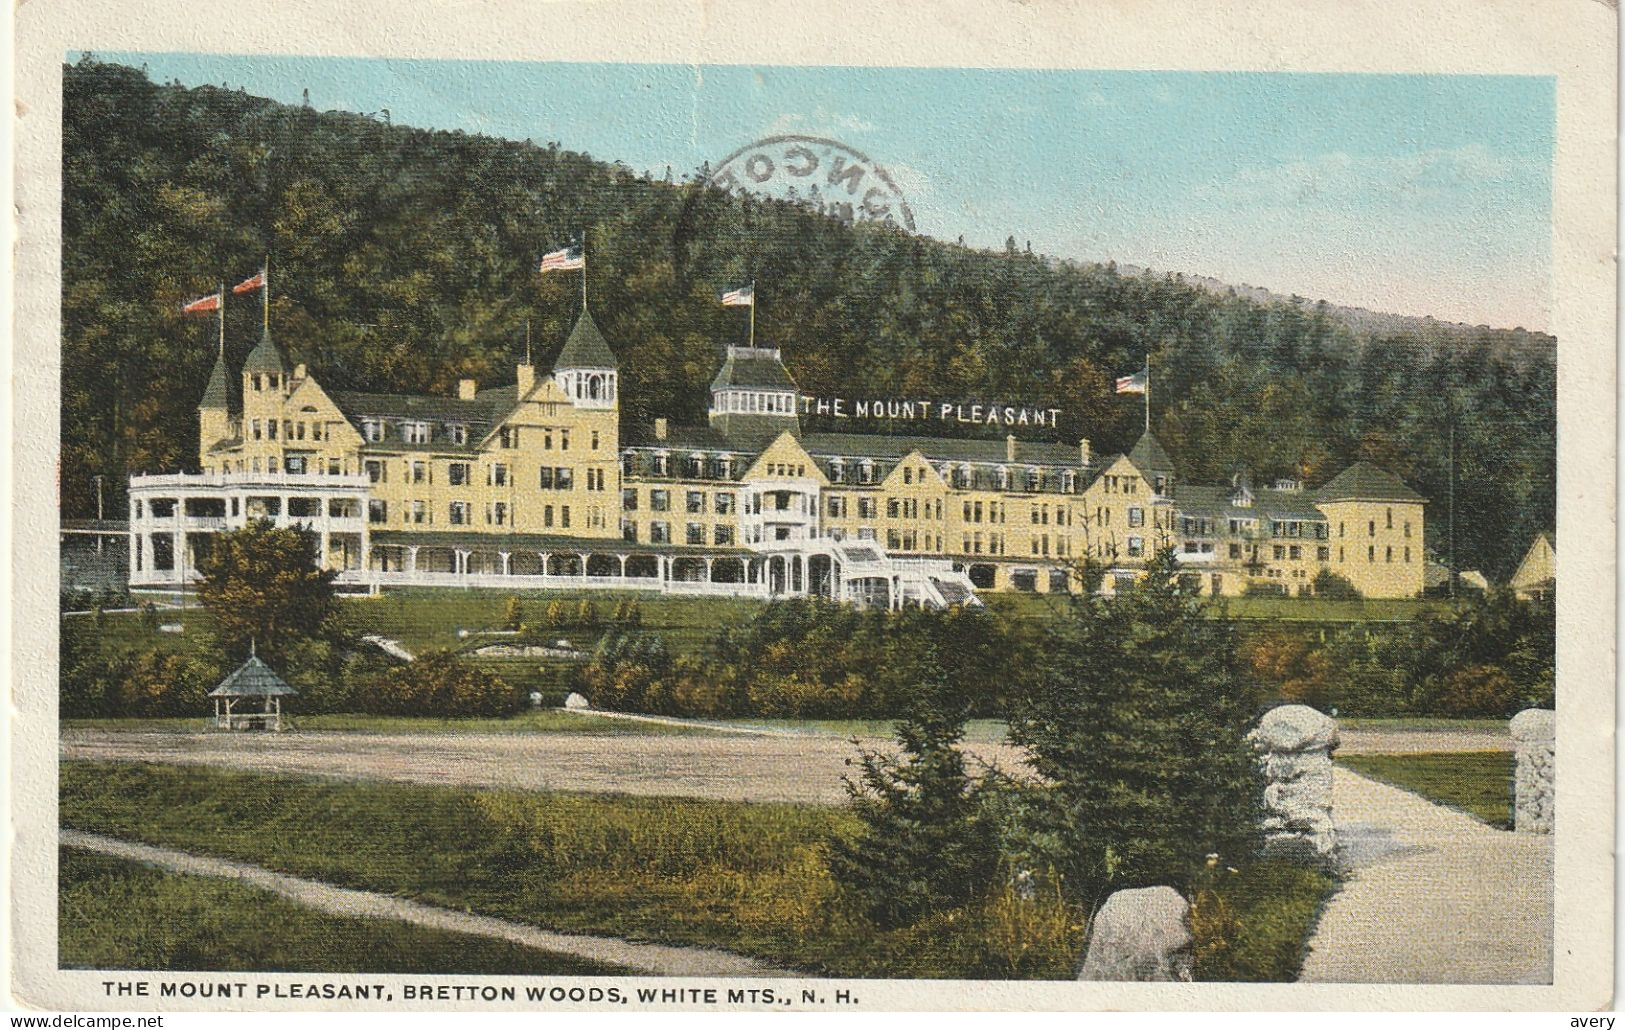 The Mount Pleasant Hotel, Bretton Woods, White Mountains, New Hampshire - White Mountains